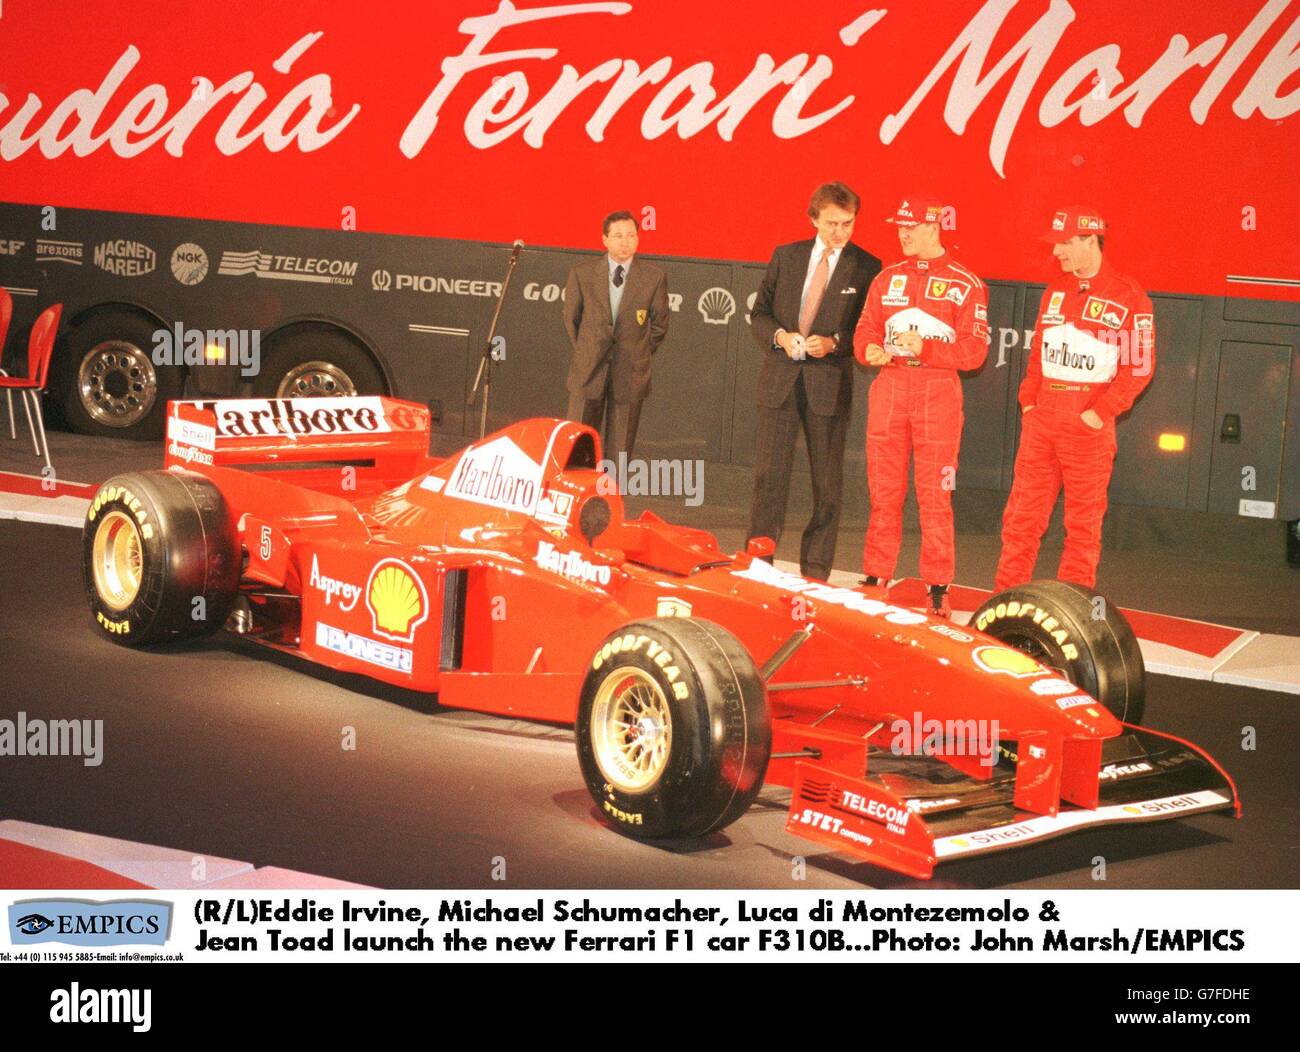 (R/L)Eddie Irvine, Michael Schumacher, Luca di Montezemolo & Jean Todt lanciano la nuova Ferrari Formula 1 F310B Foto Stock